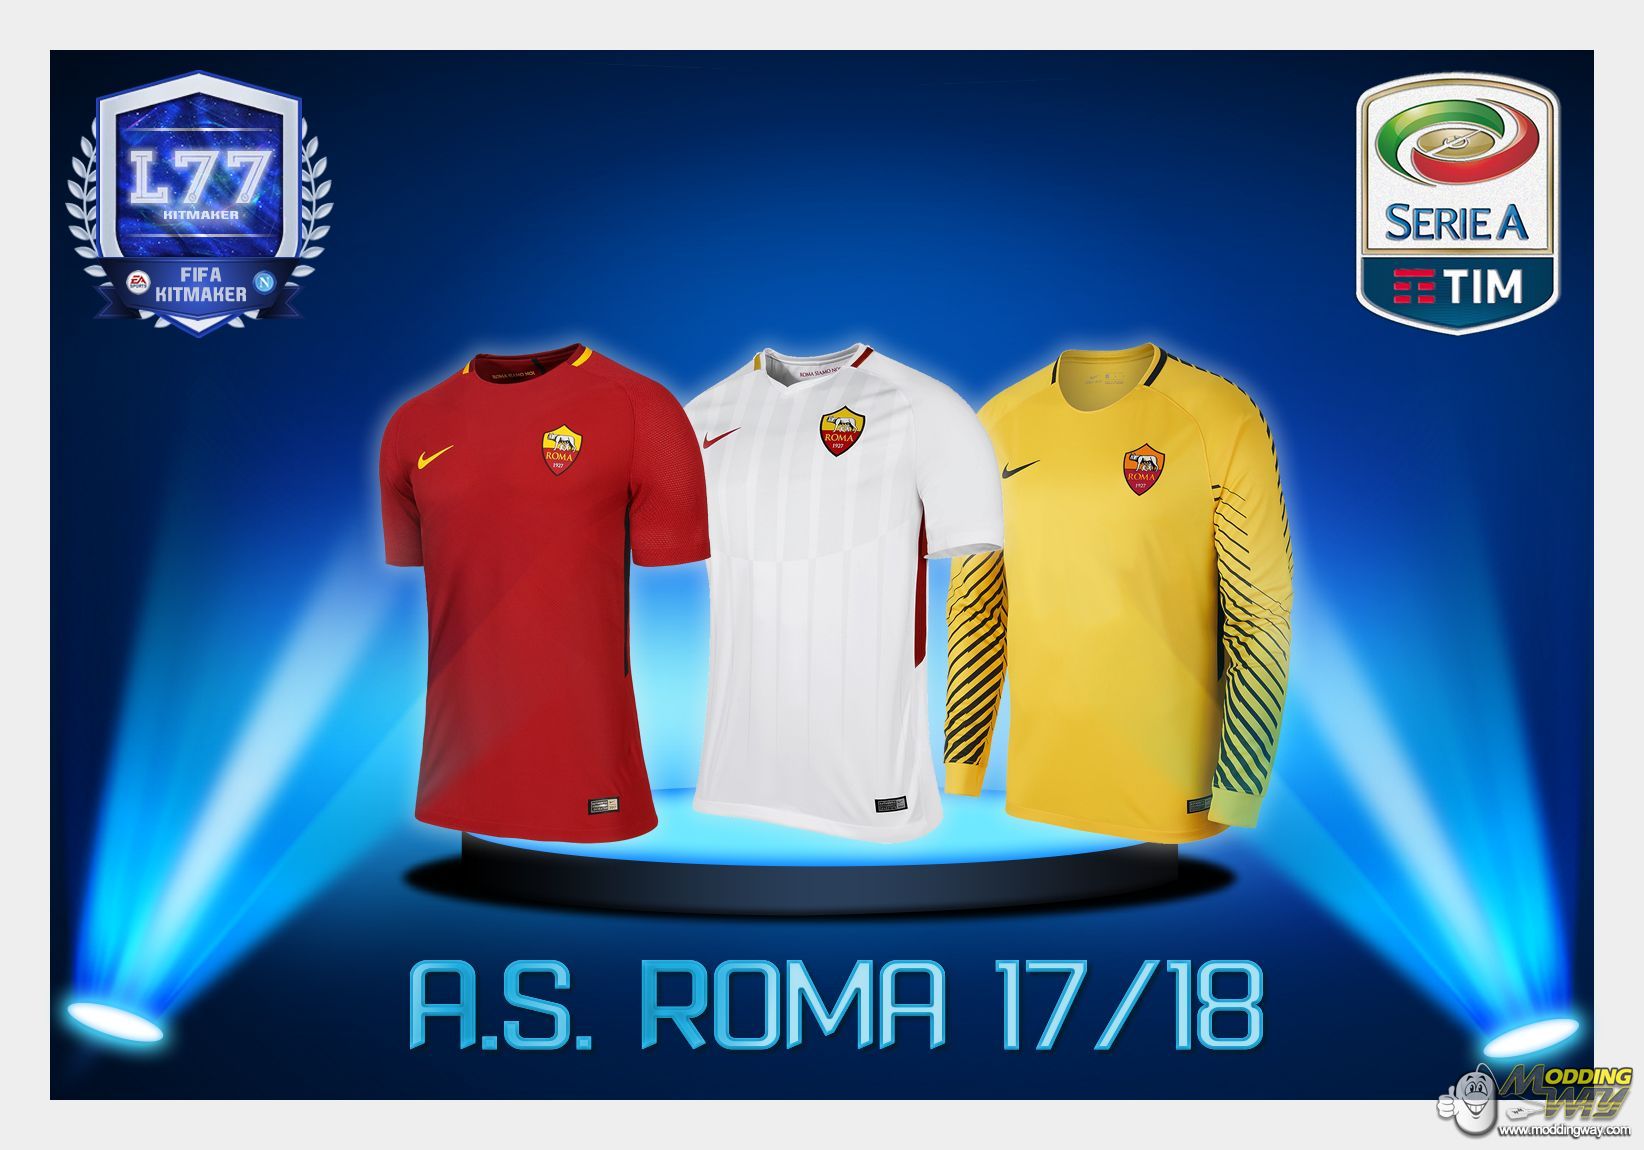 A.S. Roma 2017/18 - FIFA 16 at ModdingWay